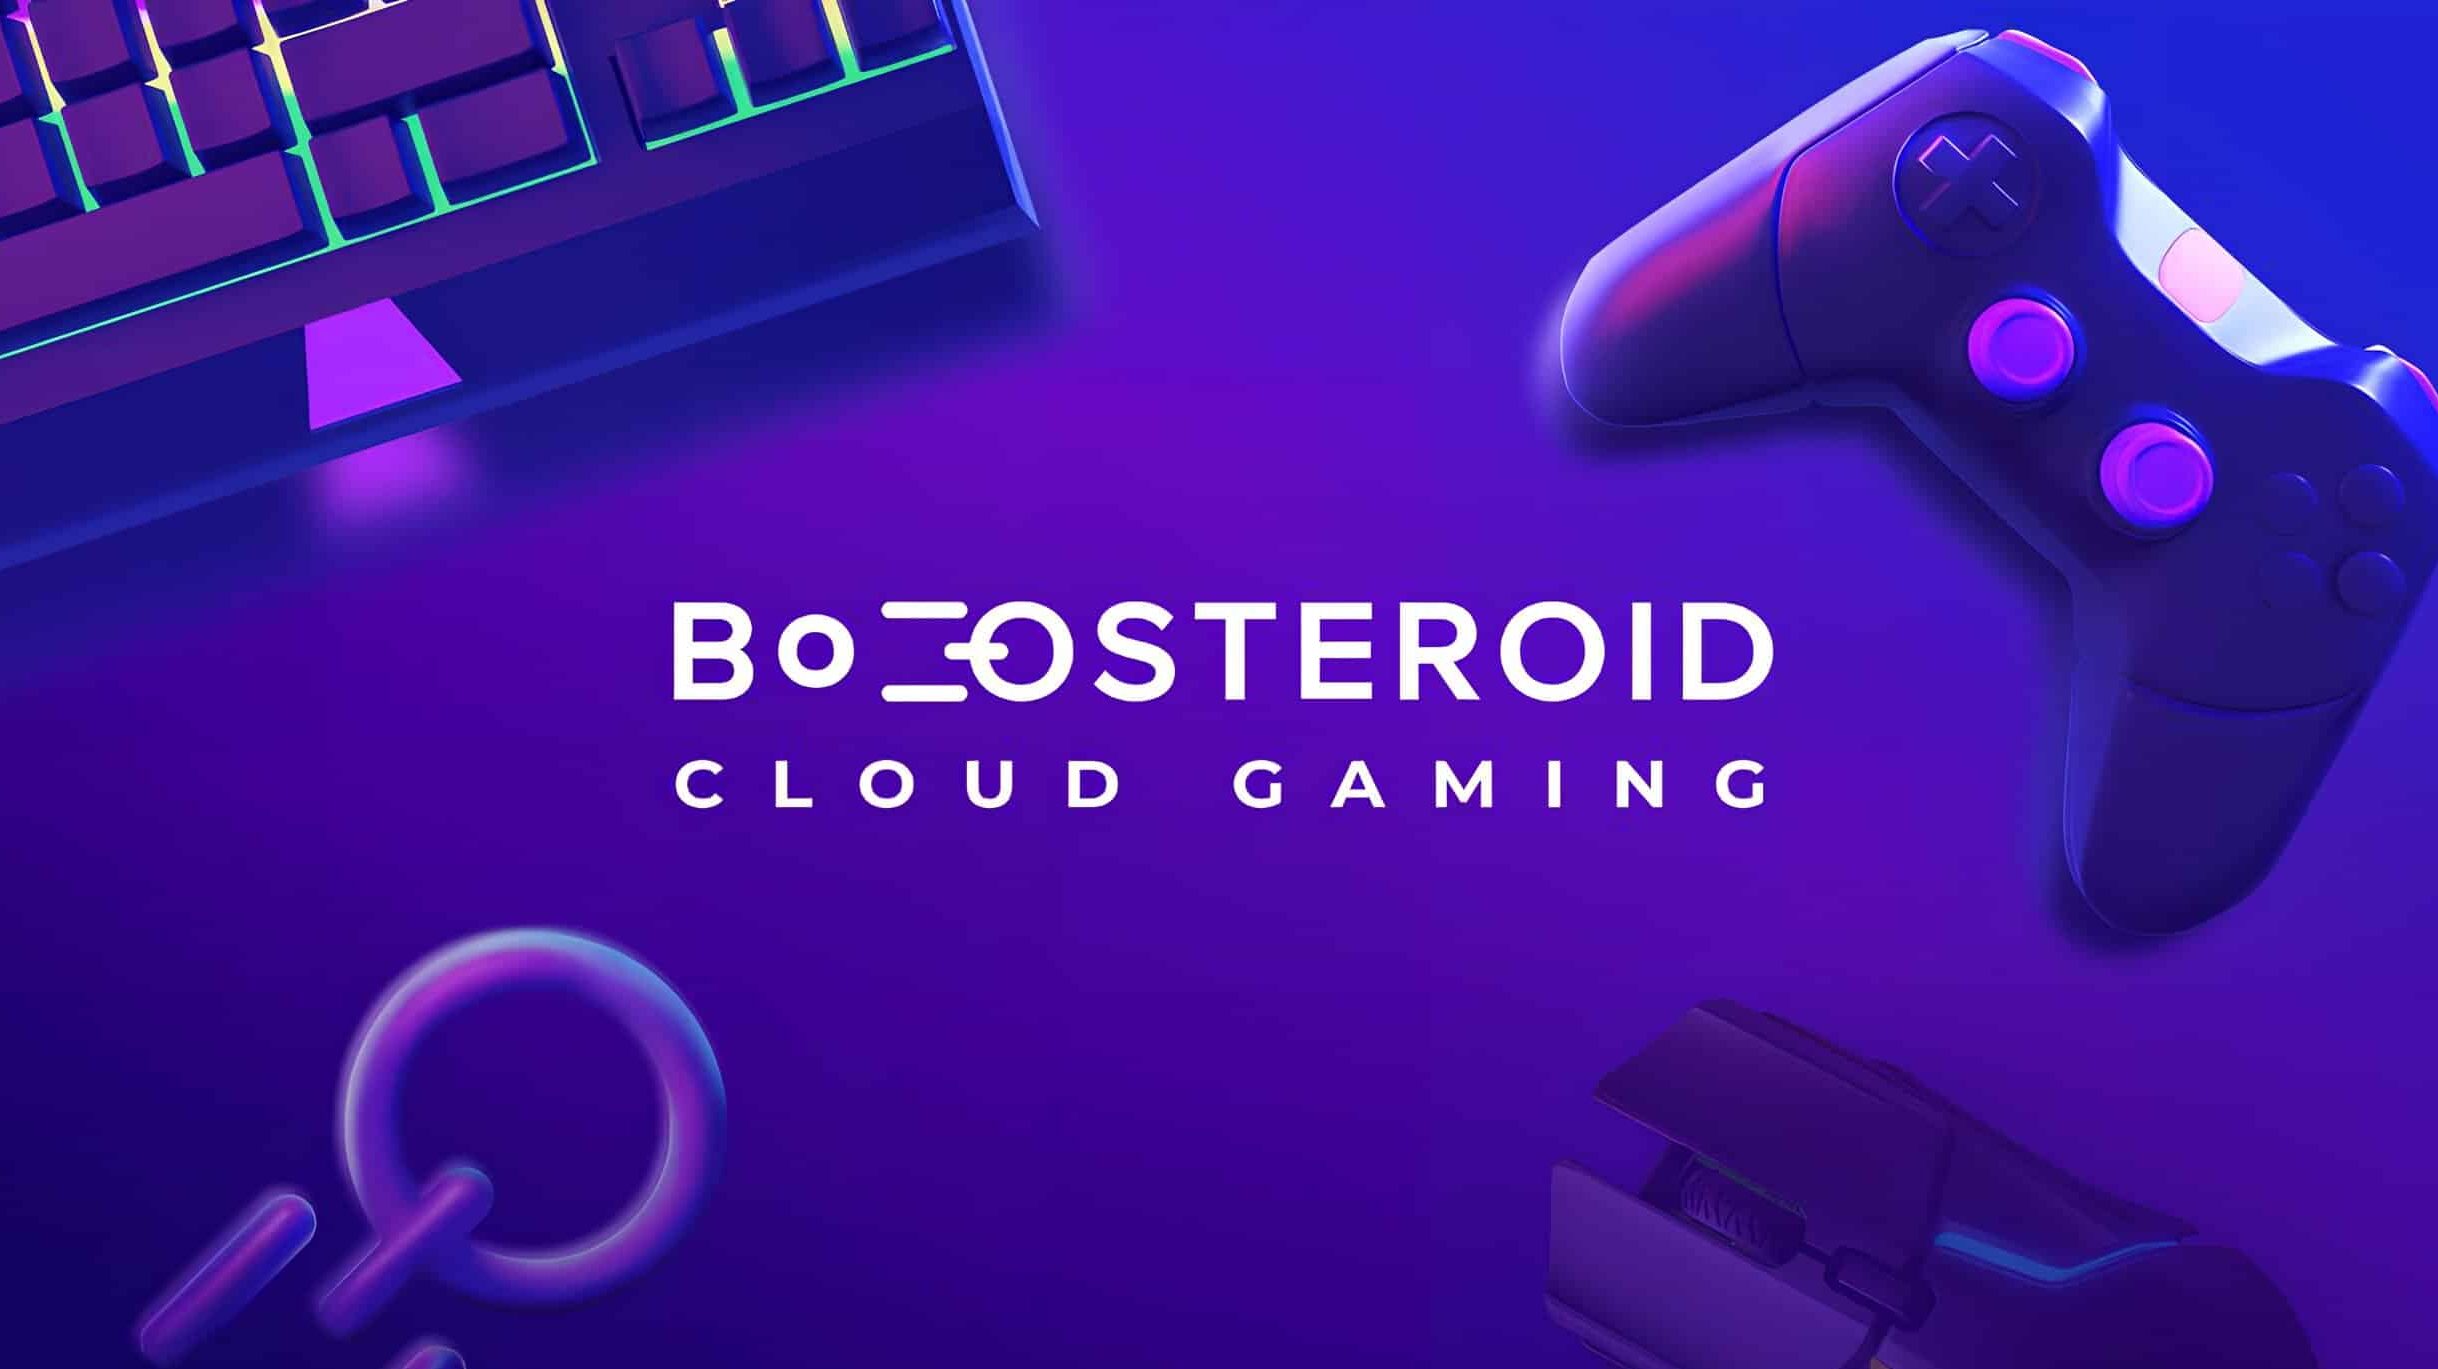 Merece la pena pagar Boosteroid en Latinoamerica?.Explicacion y detalles de  Boosteroid cloud gaming 